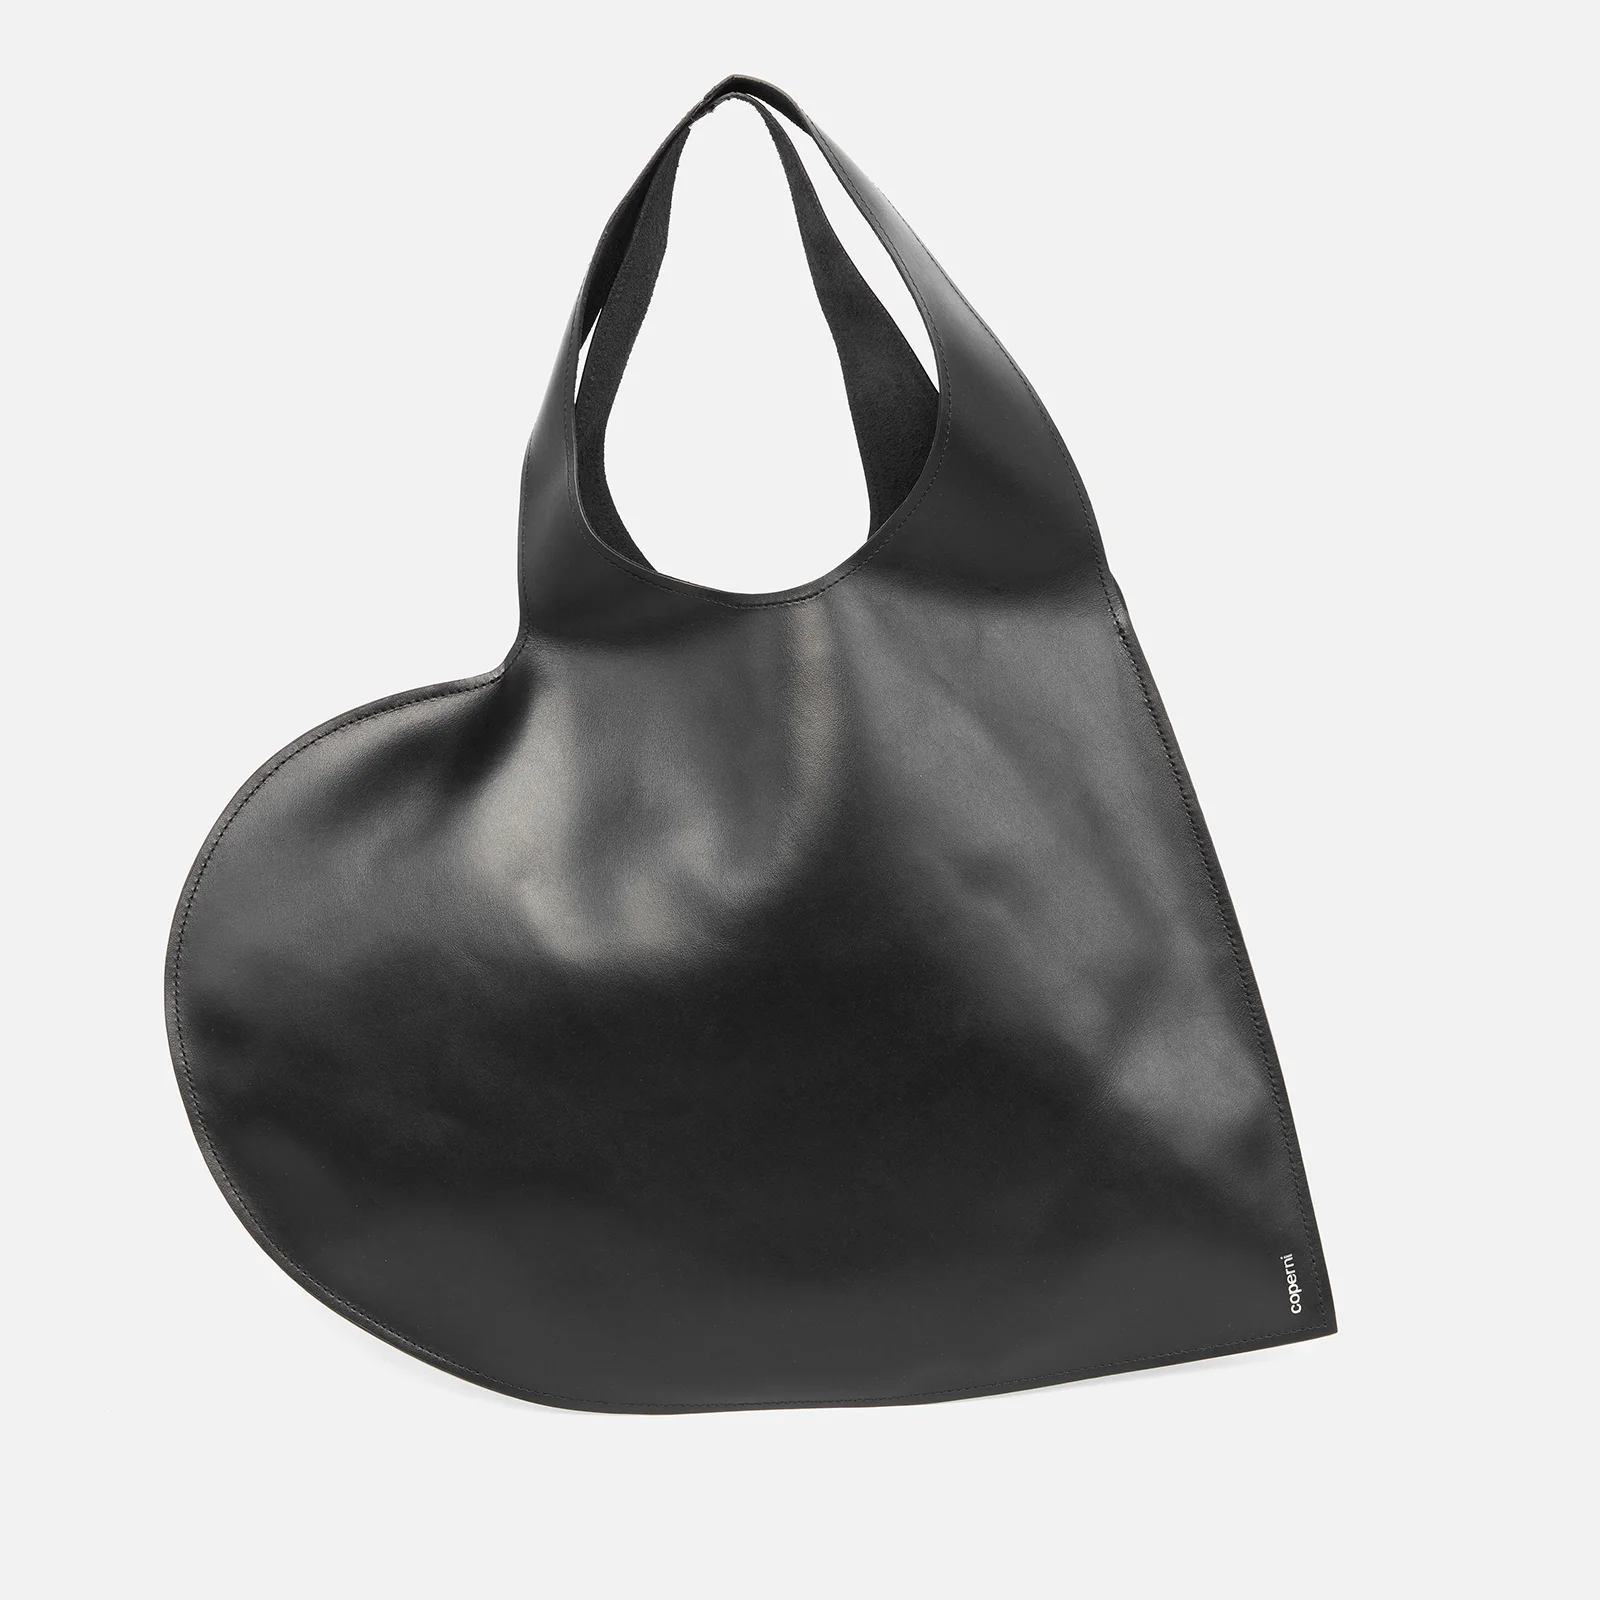 Coperni Women's Heart Tote Bag - Black Image 1